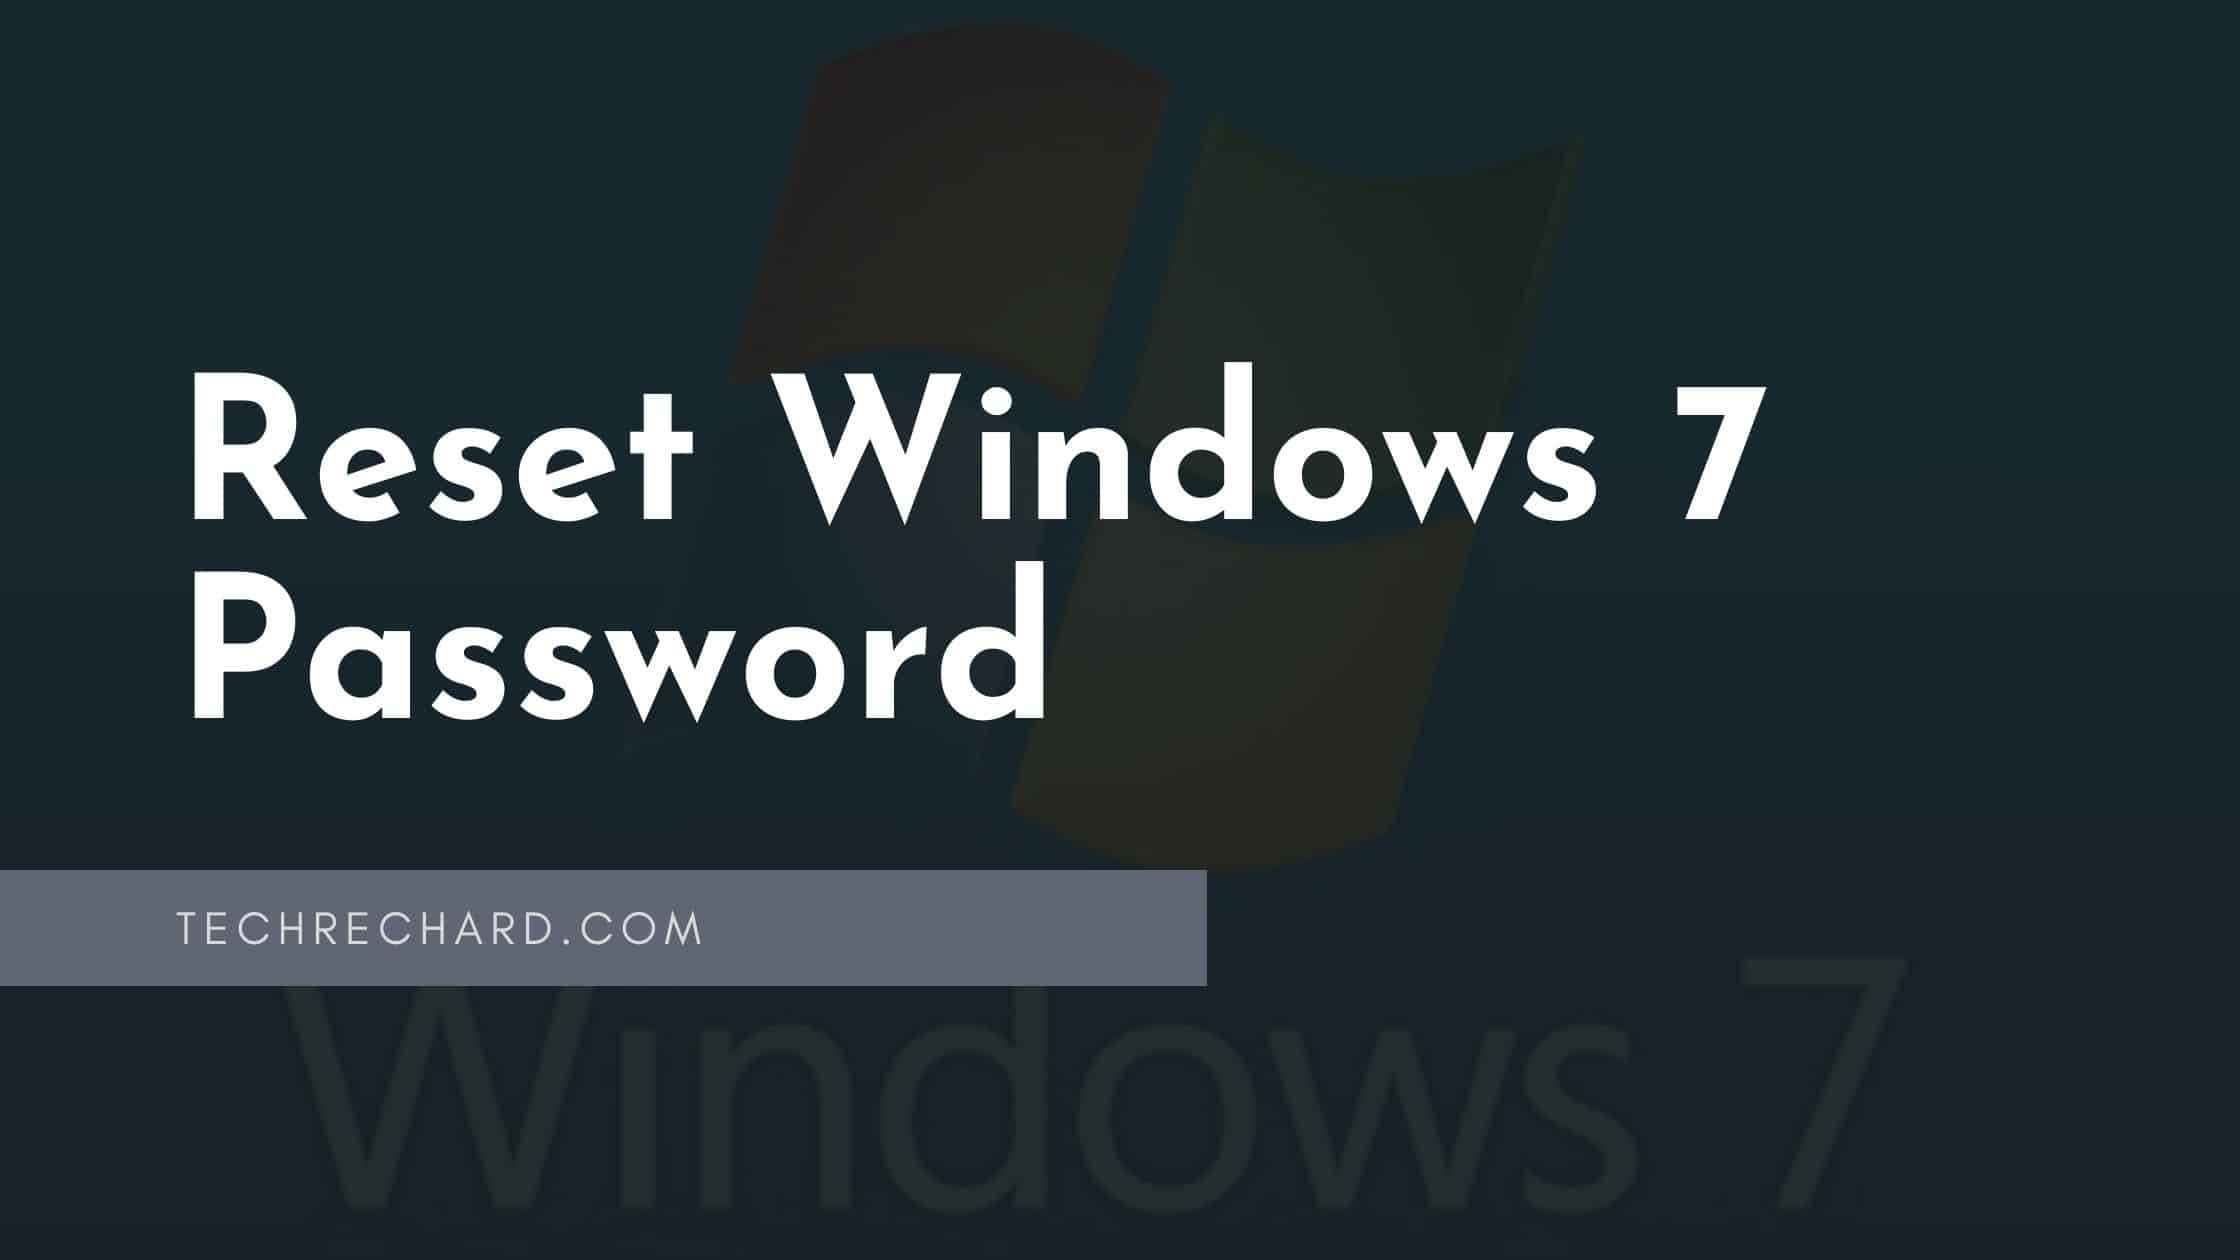 Top Ways to Reset Windows 7 Password